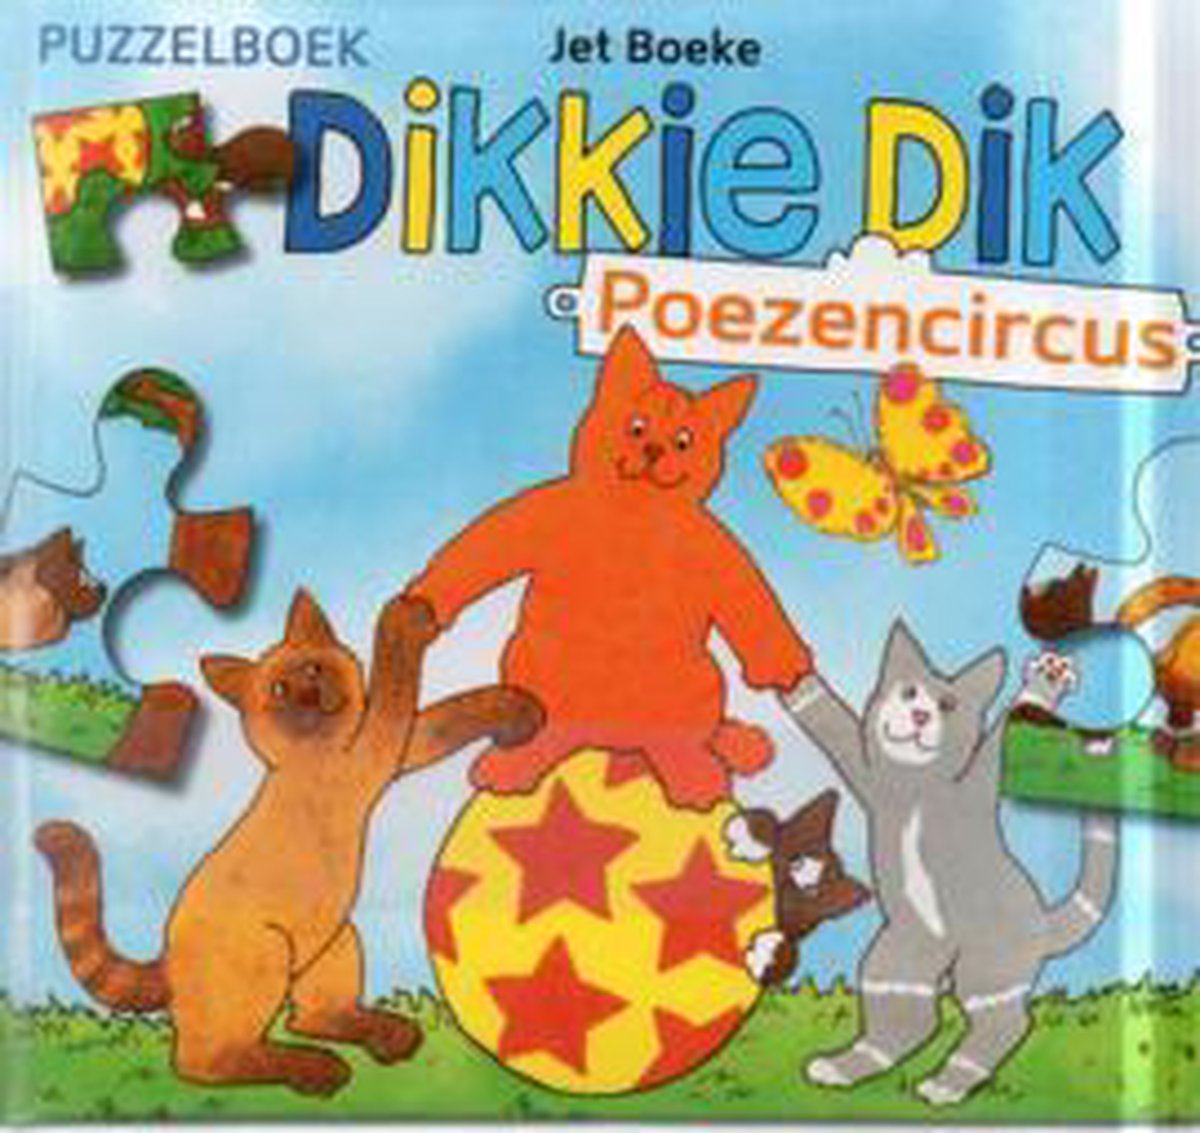 Dikkie Dik Poezencircus puzzelboek met 4 puzzels | bol.com